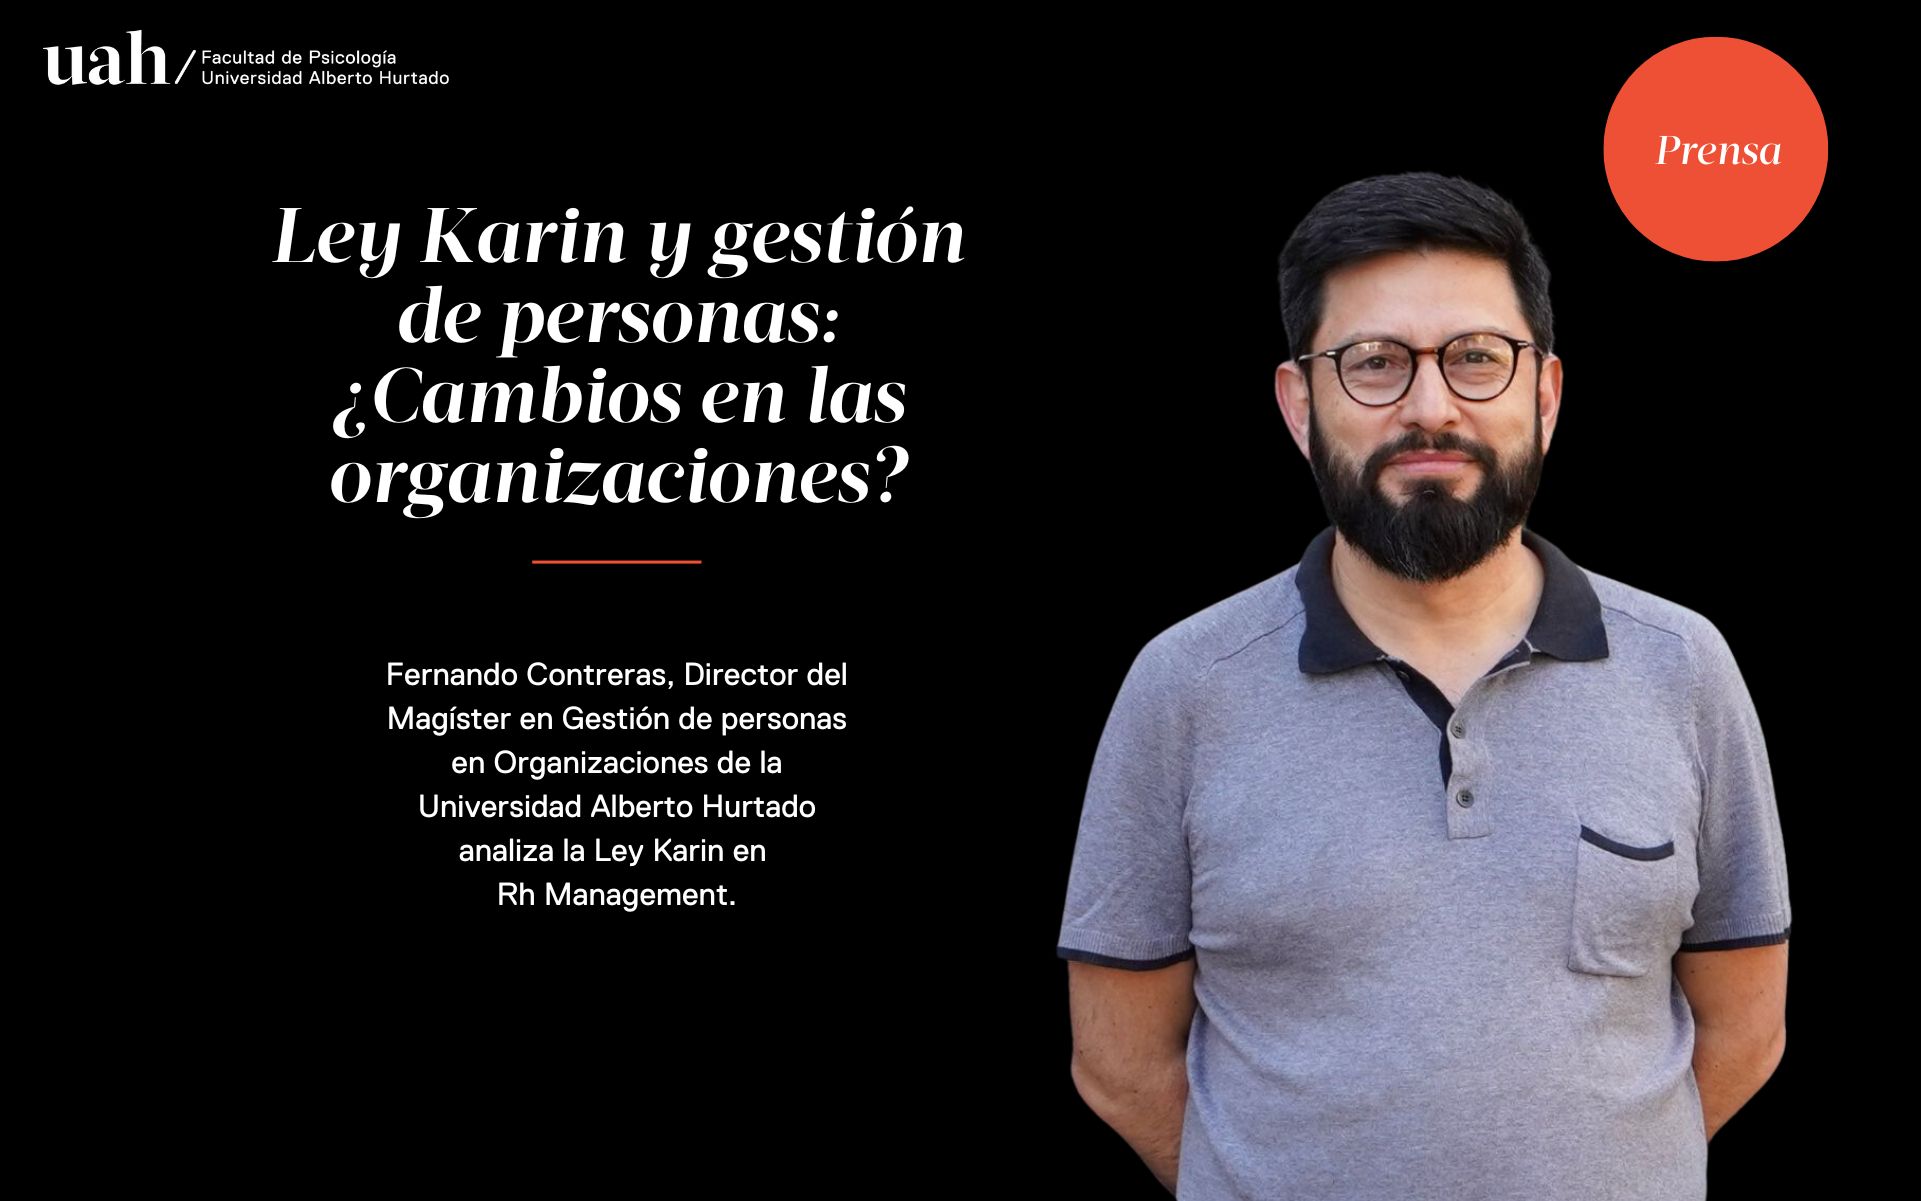 Fernando Contreras, Director del Magíster en Gestión de Personas en Organizaciones, analiza los cambios que implica la Ley Karin